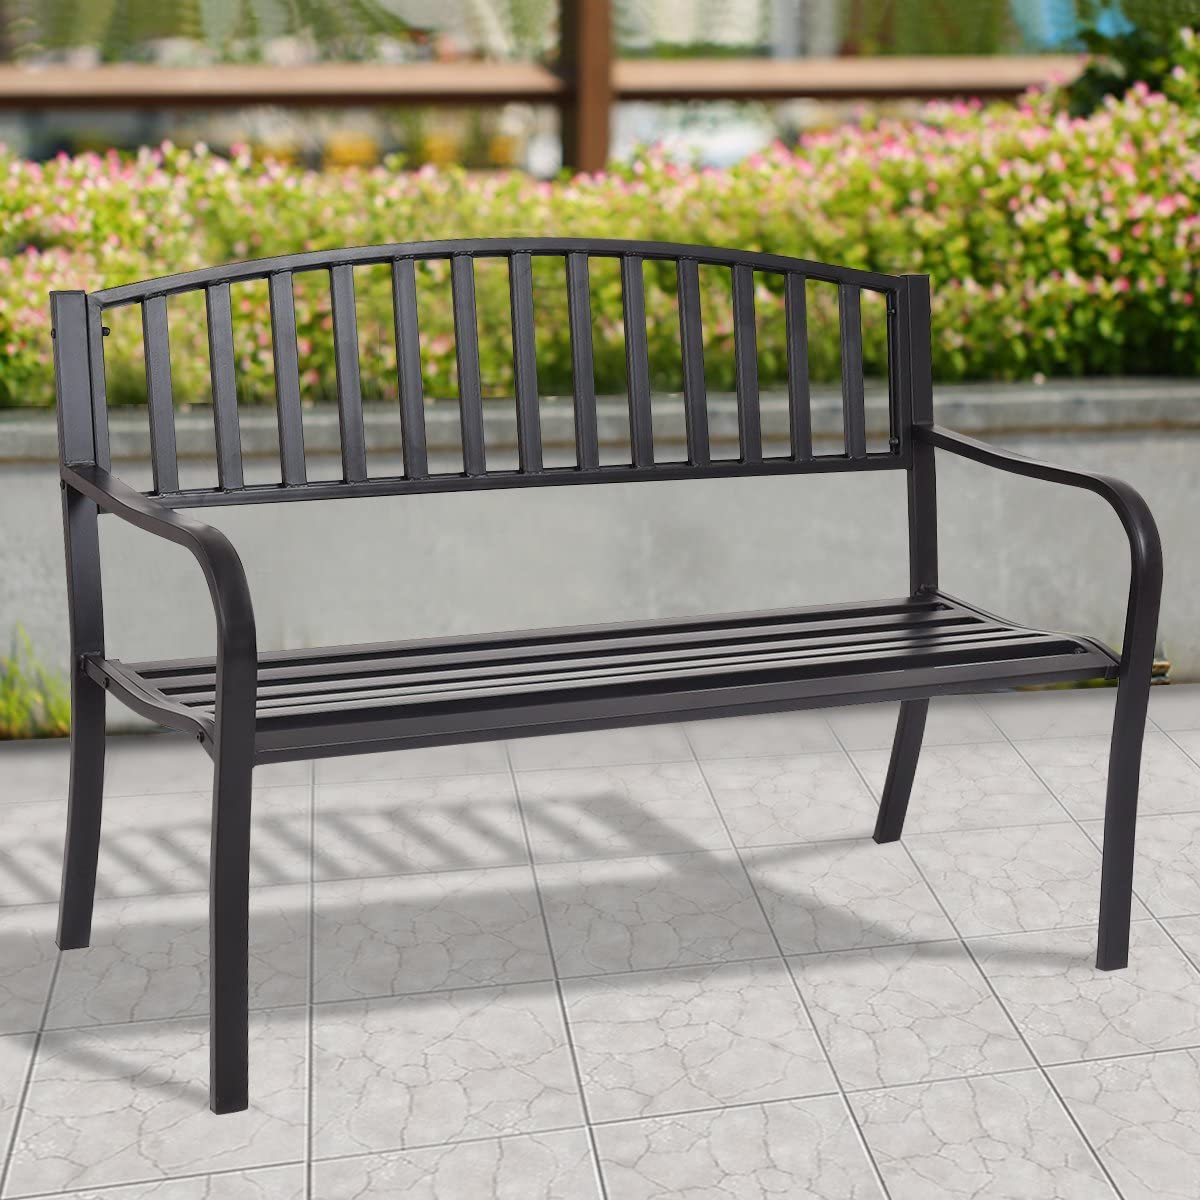 Giantex 50" Patio Garden Bench